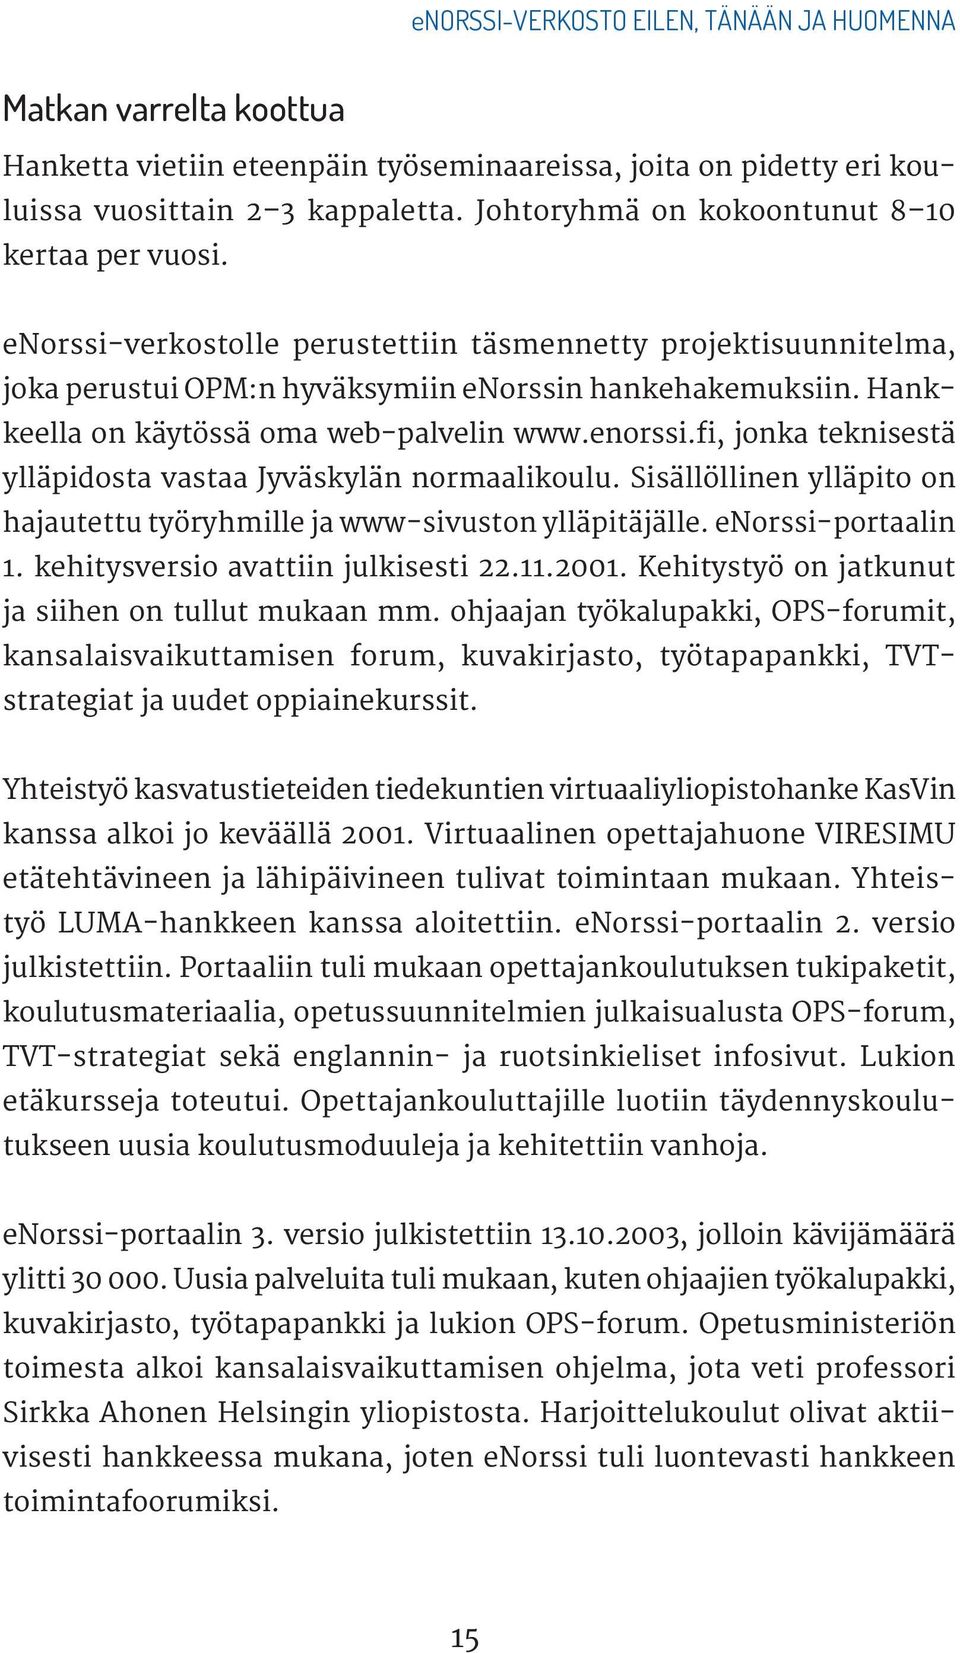 Hankkeella on käytössä oma web-palvelin www.enorssi.fi, jonka teknisestä ylläpidosta vastaa Jyväskylän normaalikoulu. Sisällöllinen ylläpito on hajautettu työryhmille ja www-sivuston ylläpitäjälle.